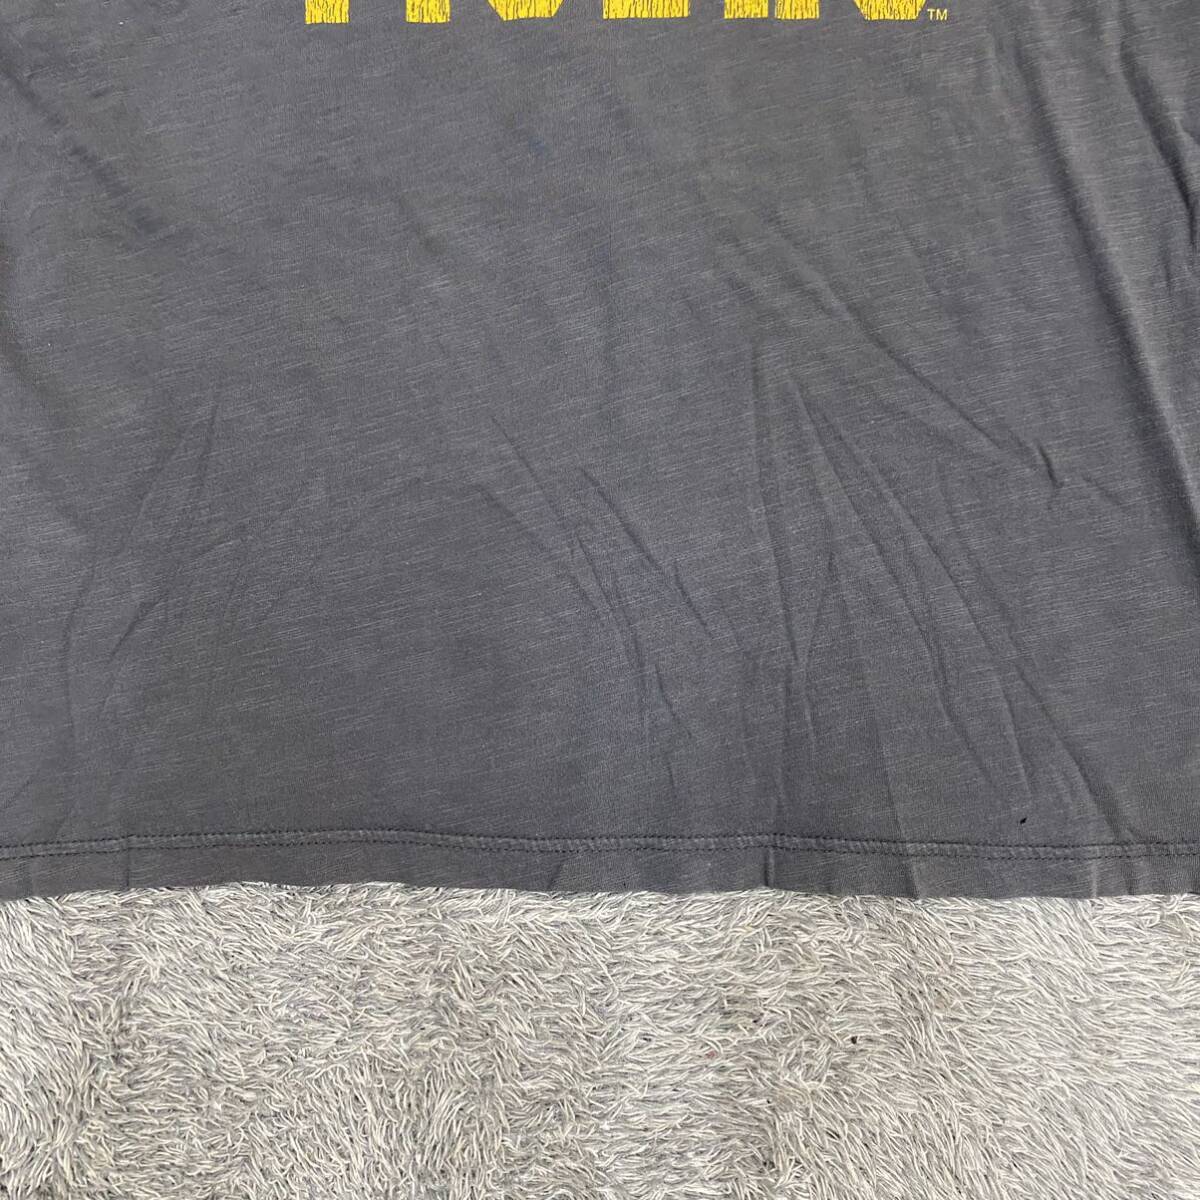 CAMPUS HERITAGE Tシャツ 半袖カットソー サイズXL グレー 灰色 メンズ トップス 最落なし （A19）の画像4